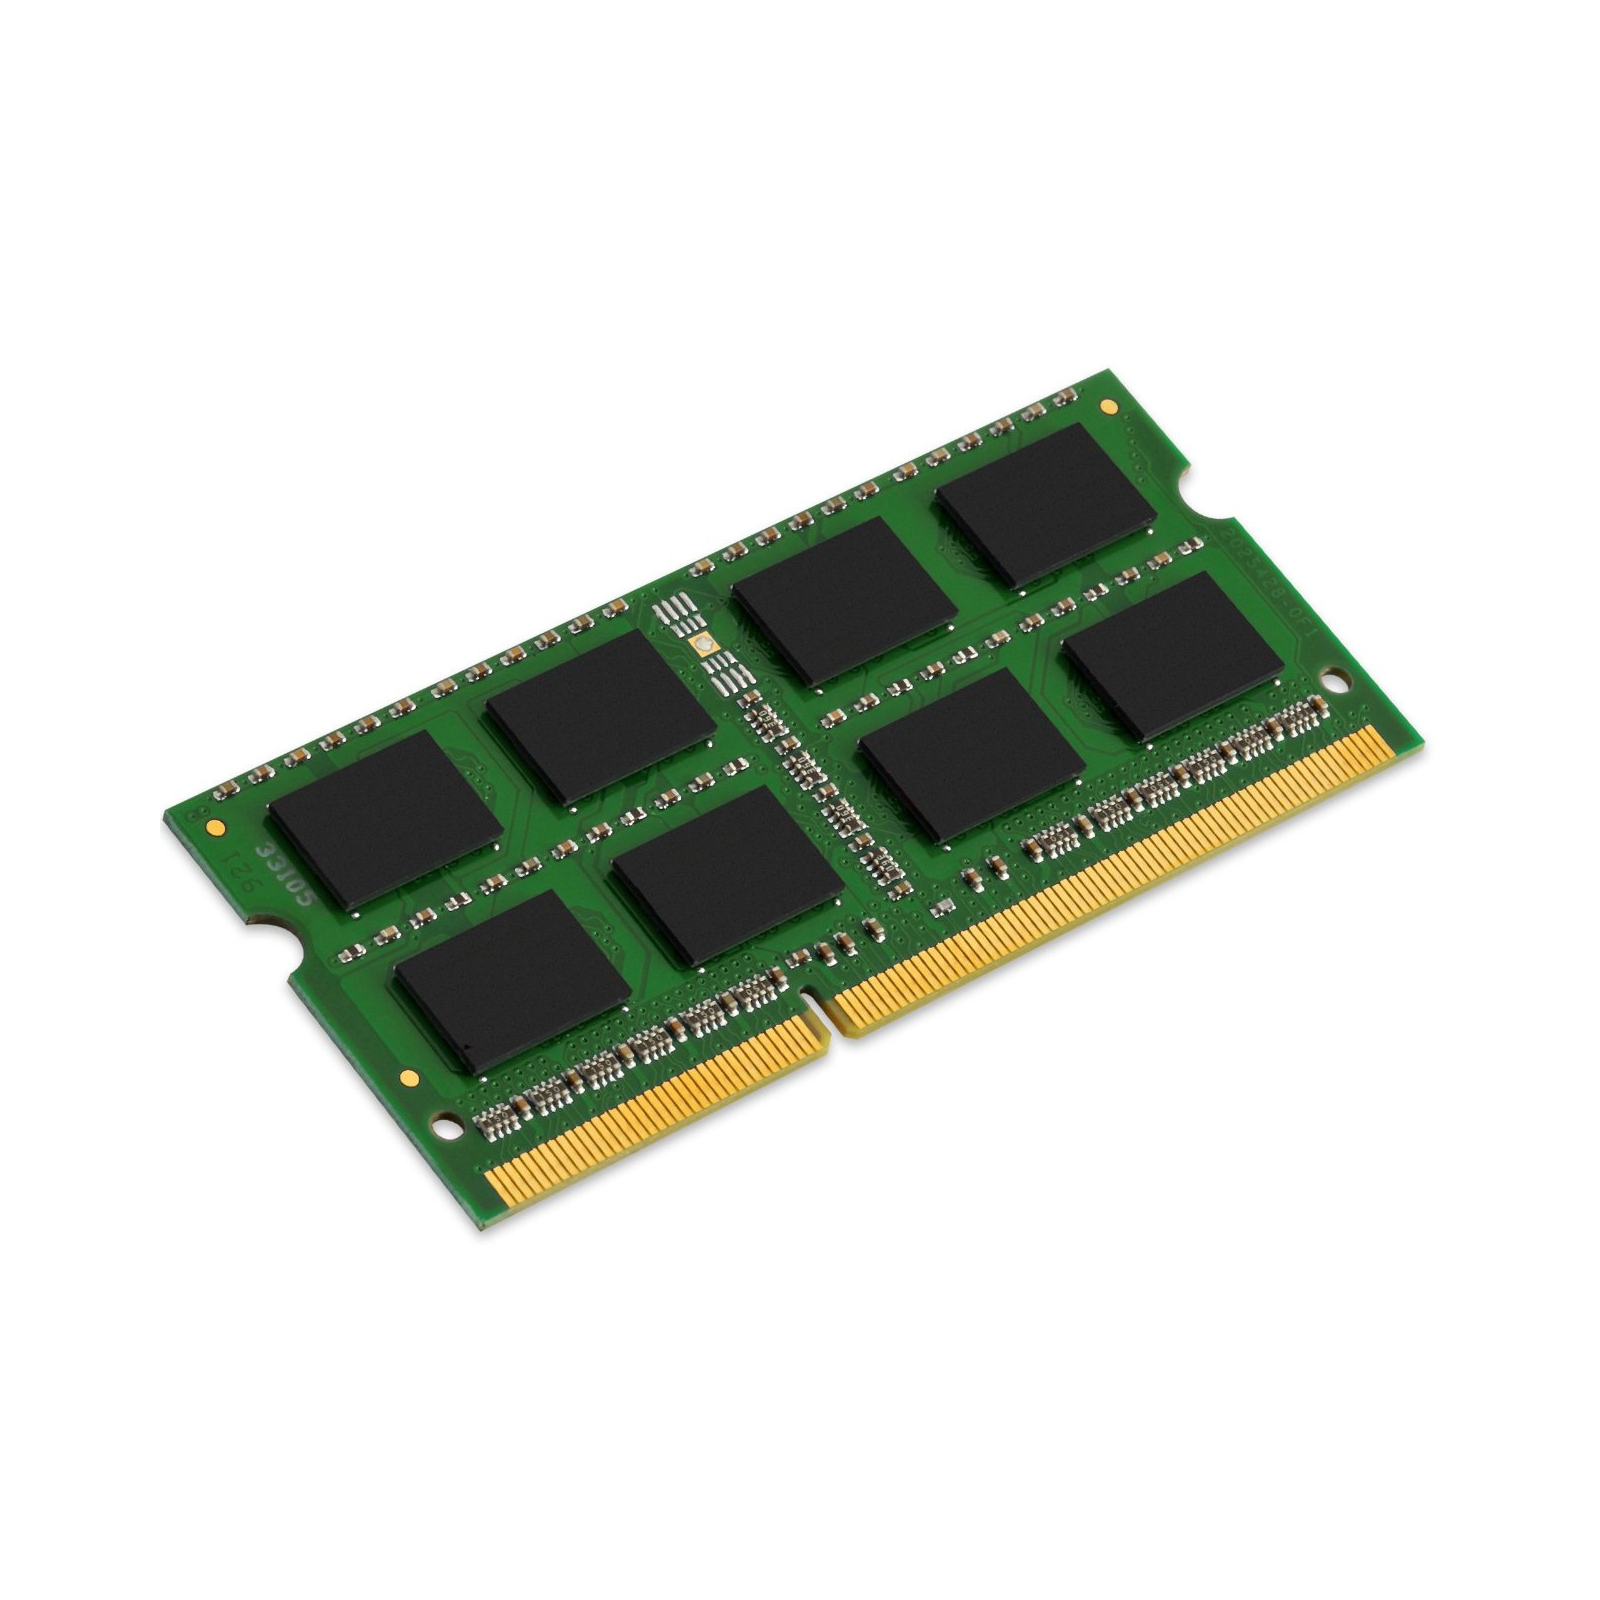 Модуль памяти для ноутбука SoDIMM DDR3L 8GB 1600 MHz Kingston (KCP3L16SD8/8)